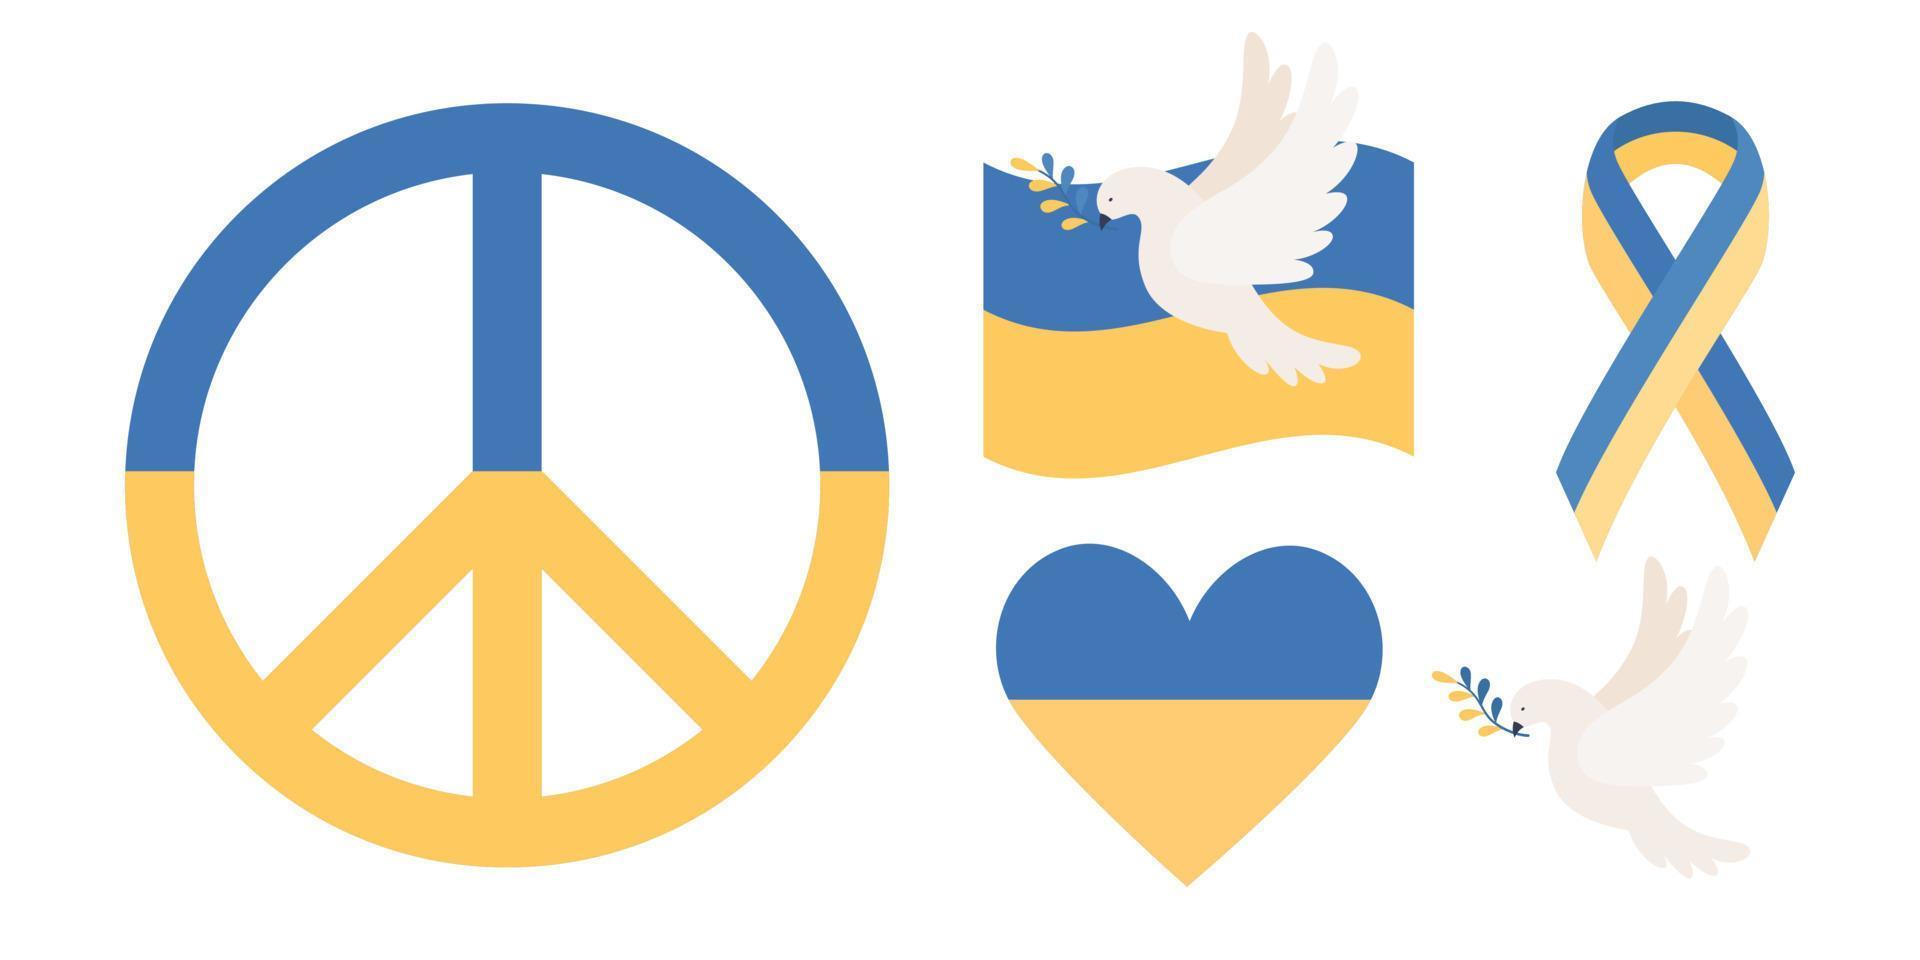 Ucrania paz símbolos icono colocar. ucranio bandera, paloma con rama, corazón, cinta. permanecer con Ucrania. salvar Ucrania concepto. vector plano ilustración